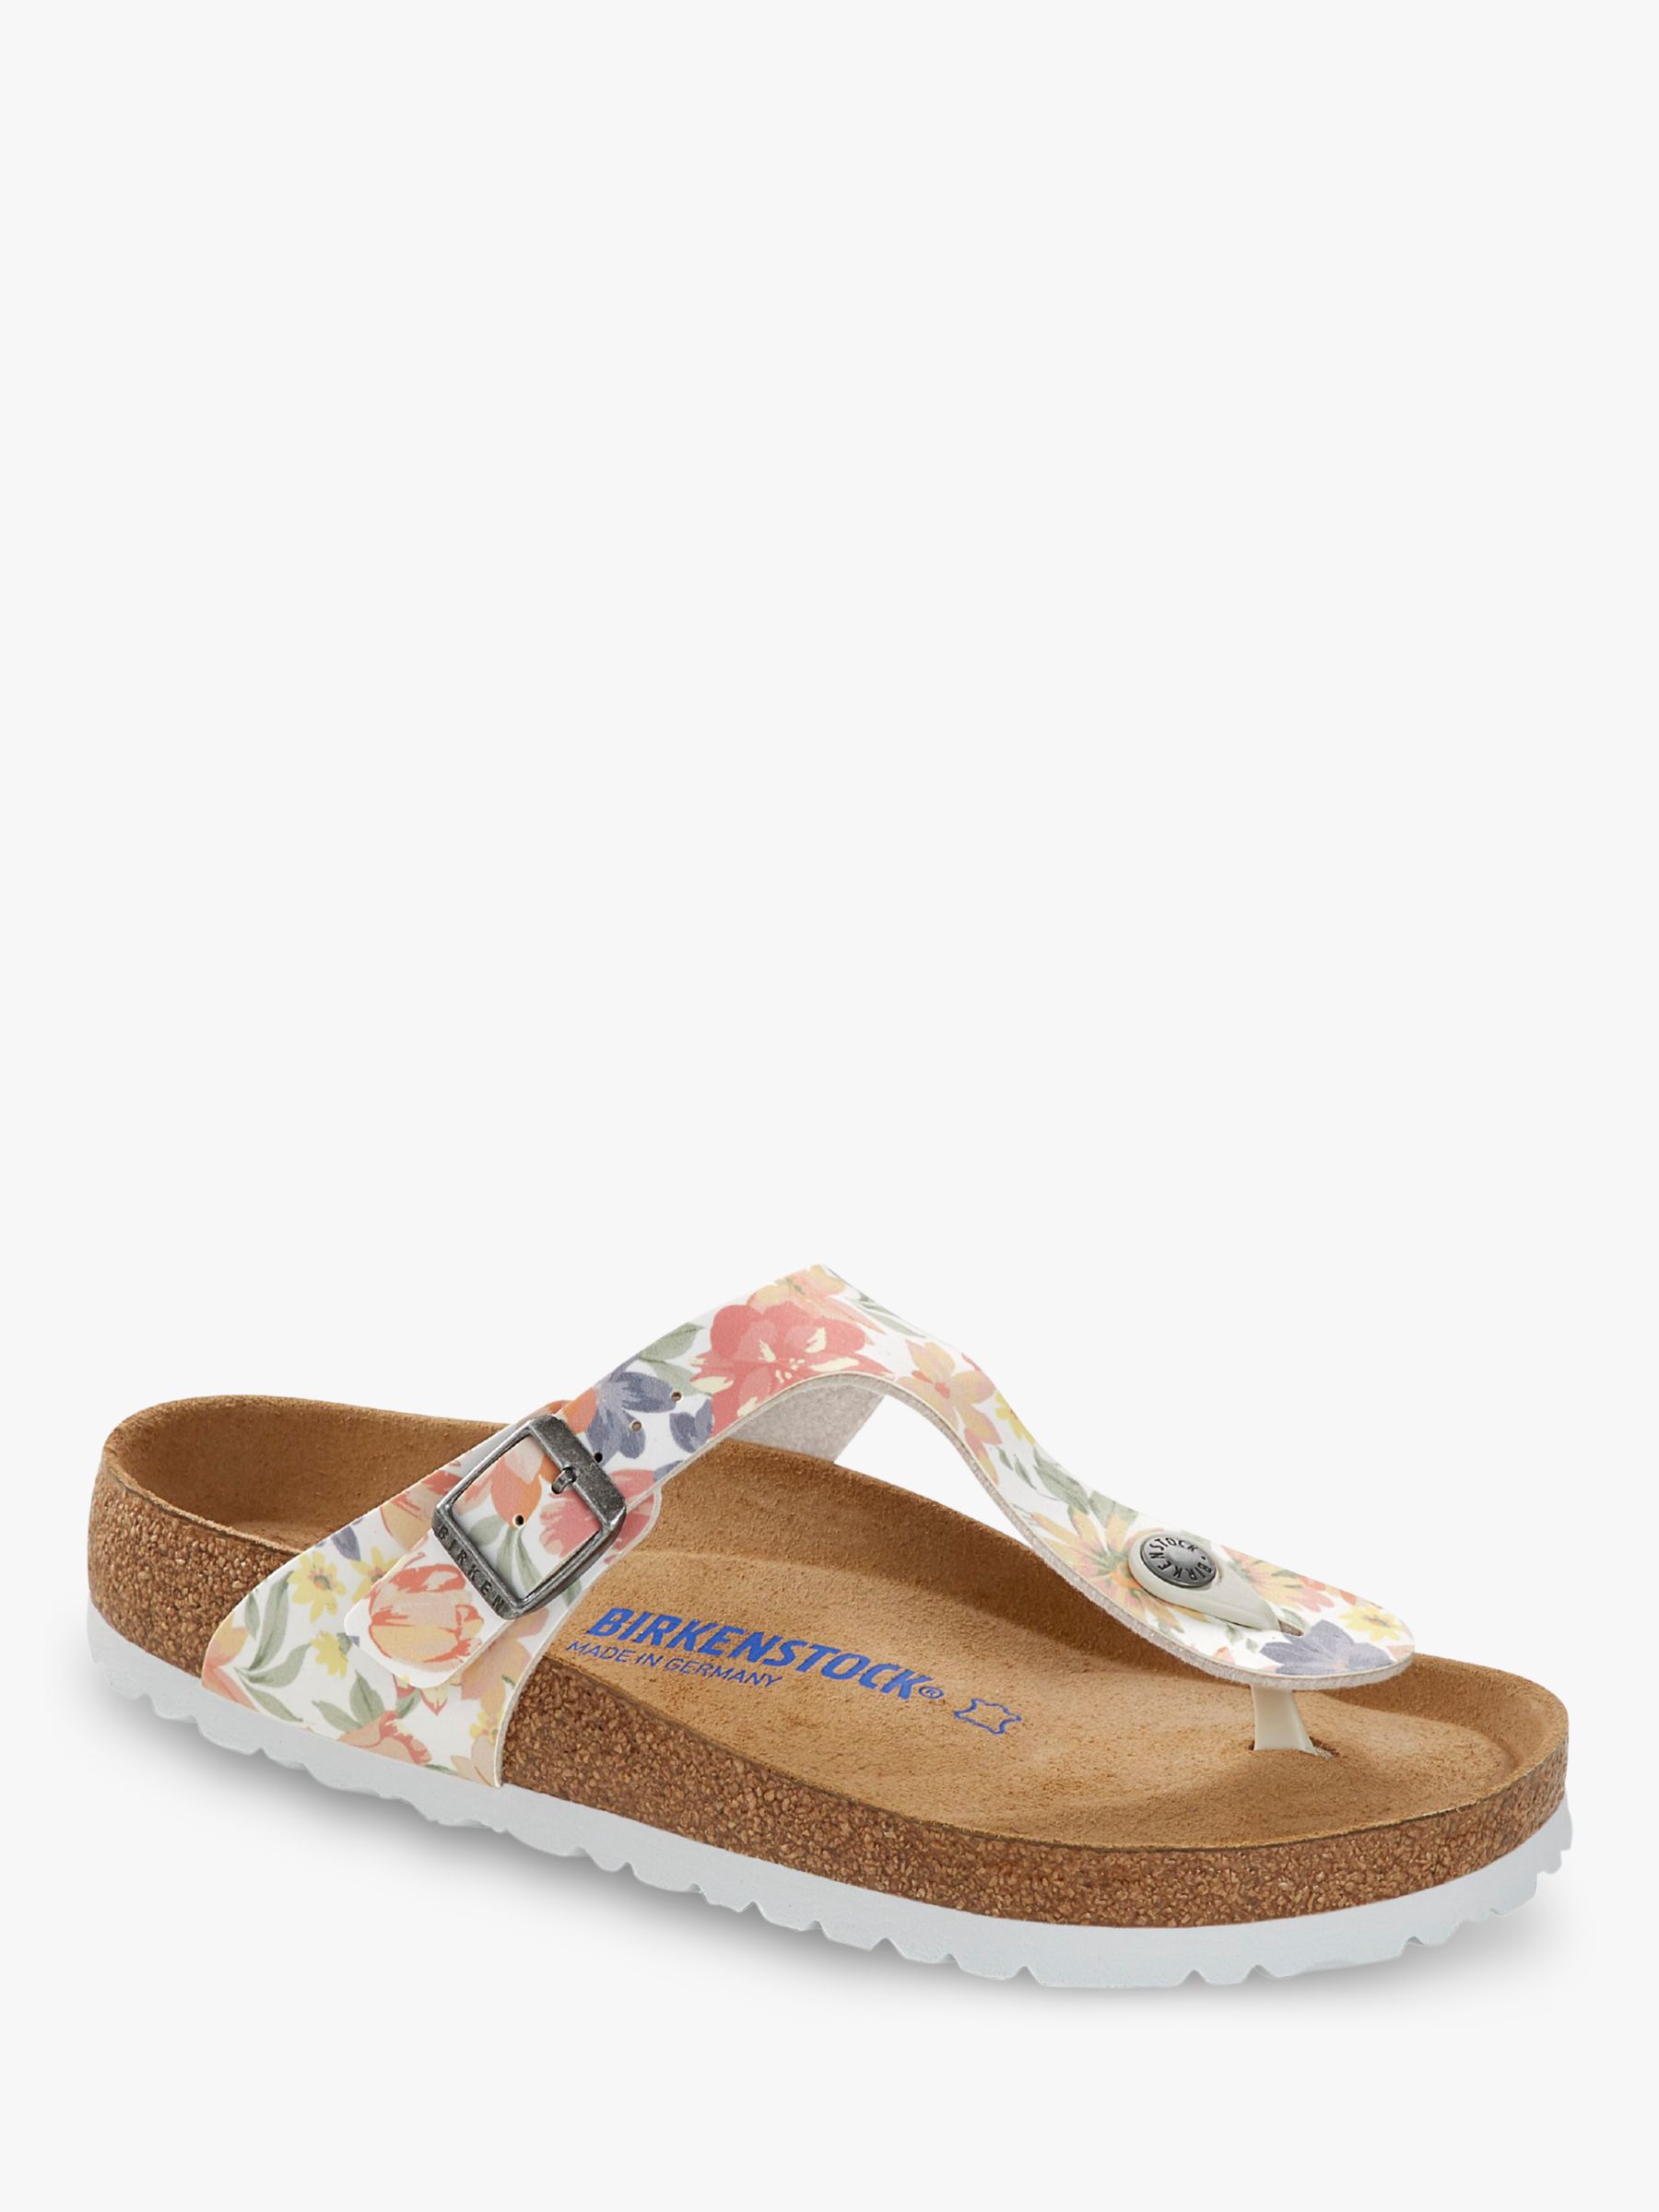 floral birkenstock women's sandals